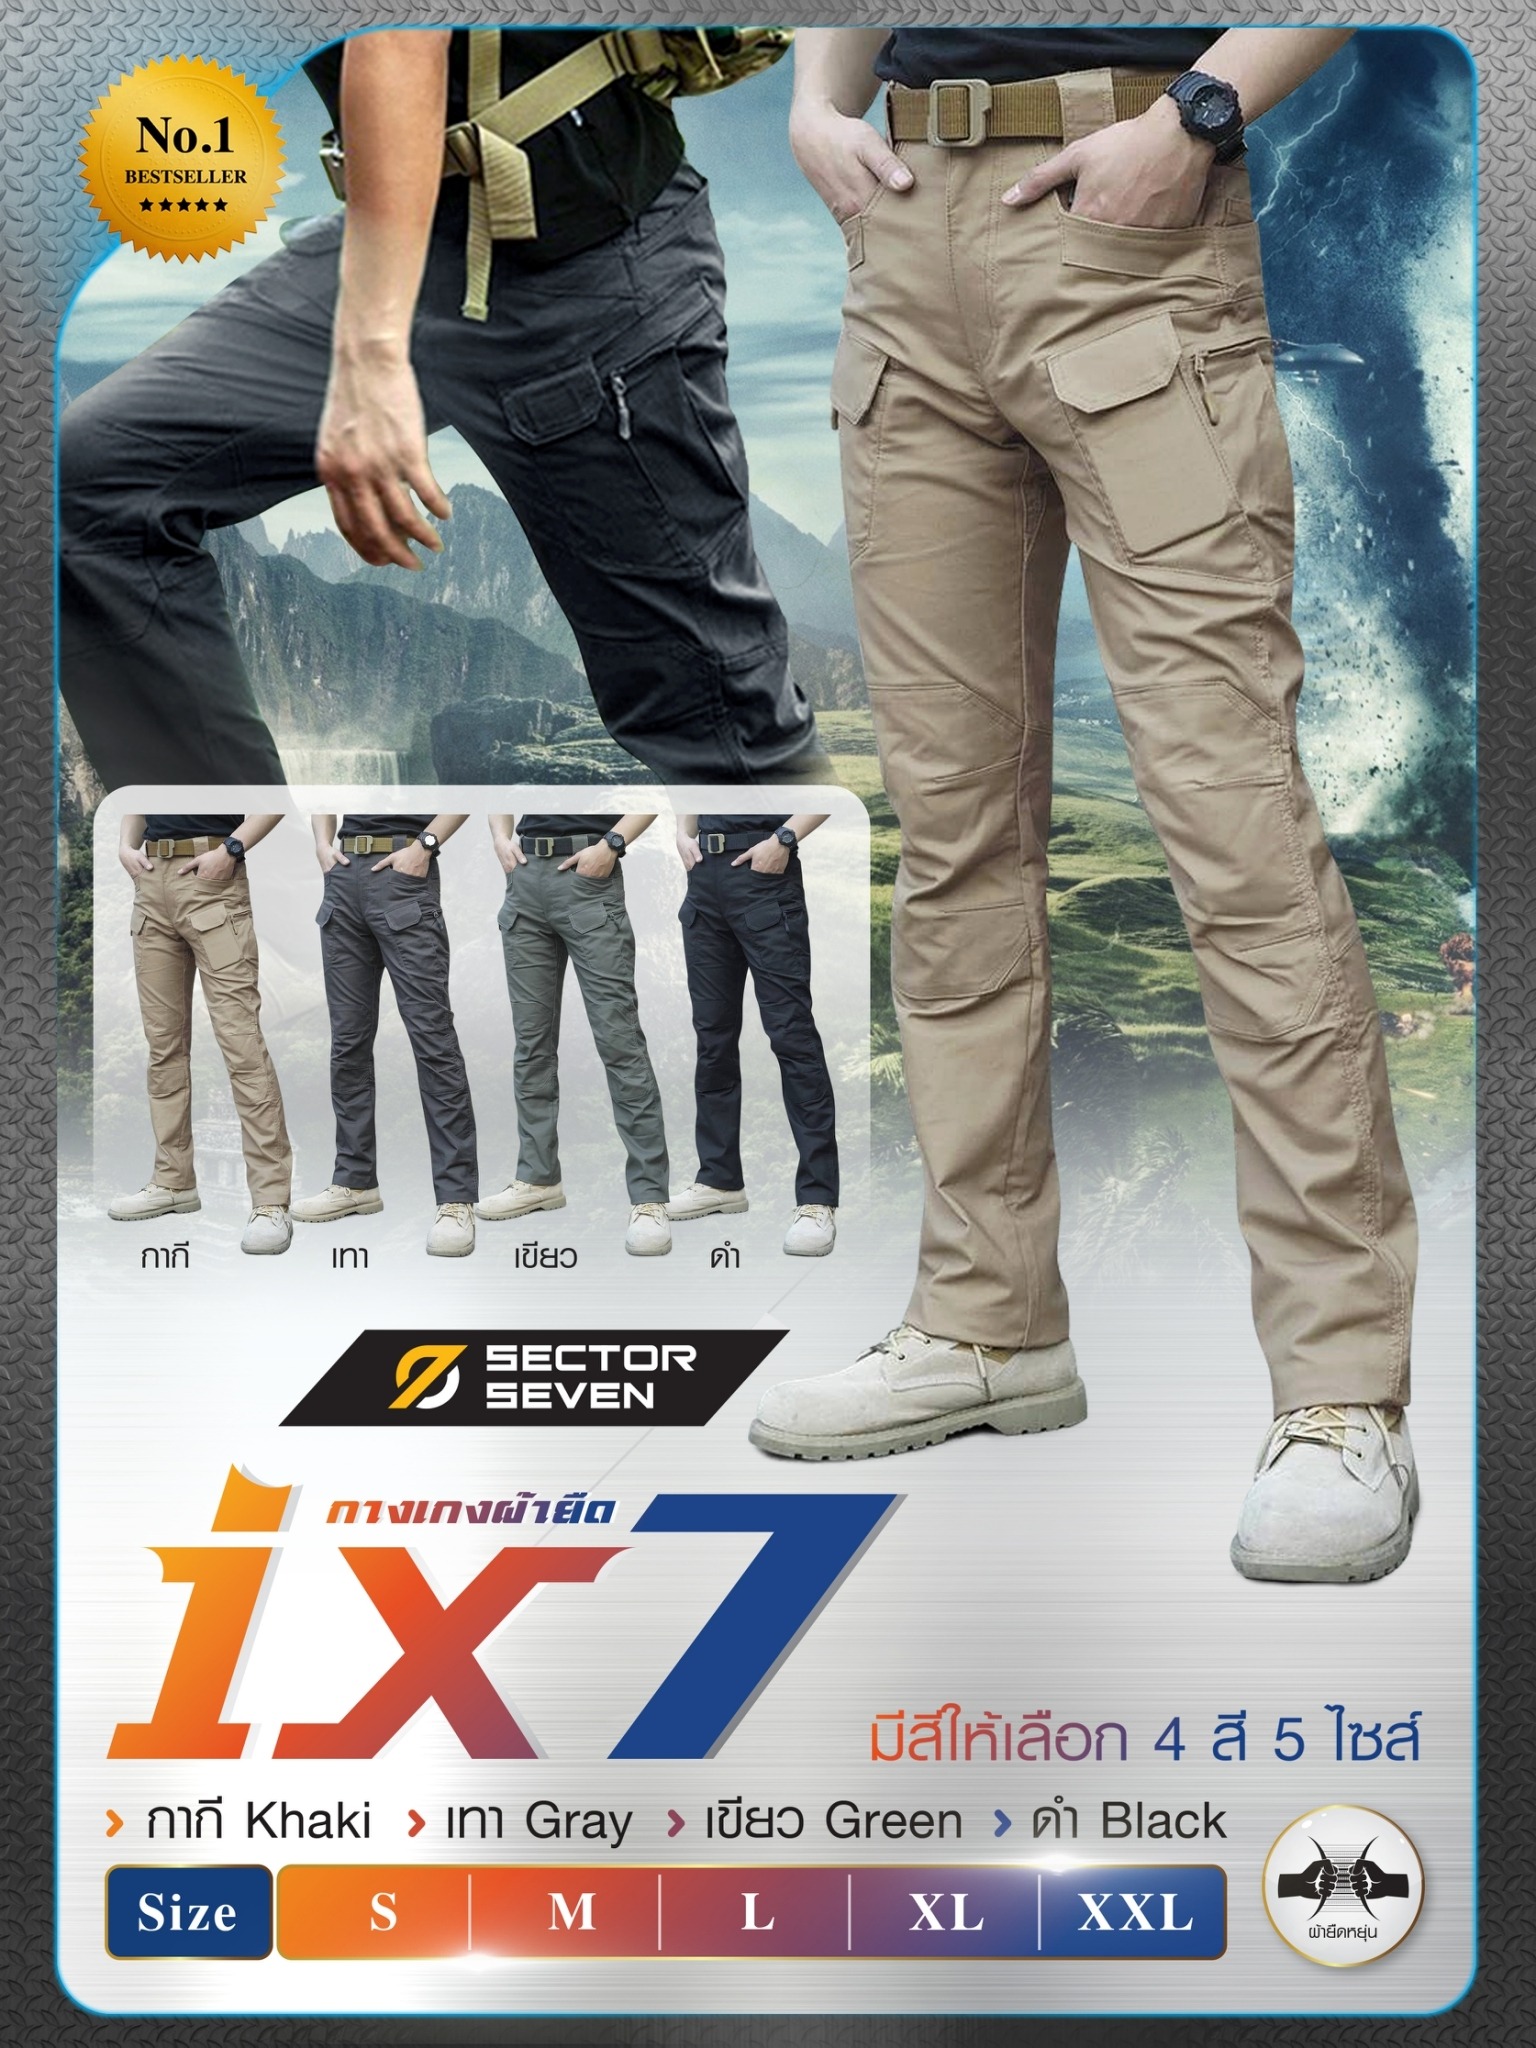 กางเกง Sector Seven IX7 ของแท้ ผ้ายืด กางเกงเดินป่า กางเกงทหาร กางเกงยุทธวิธี